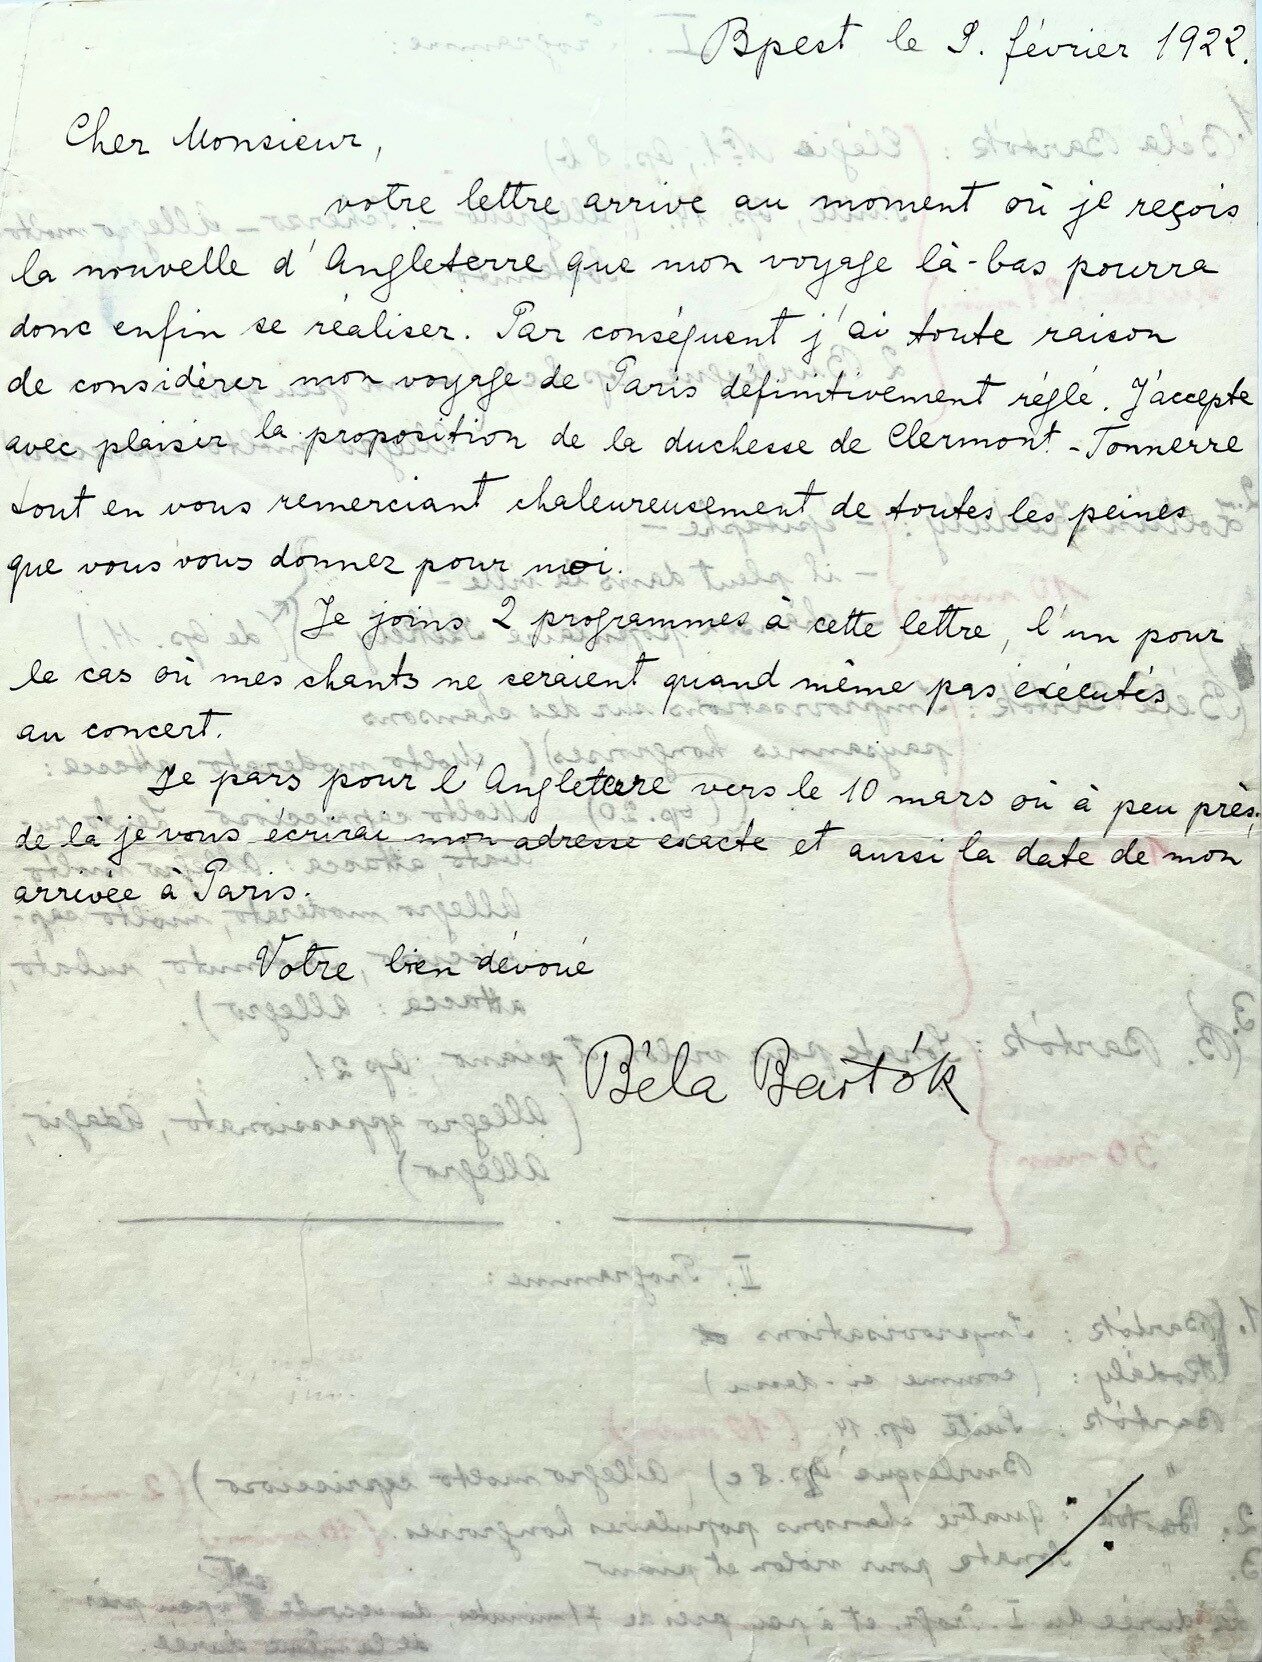 Bartok letter